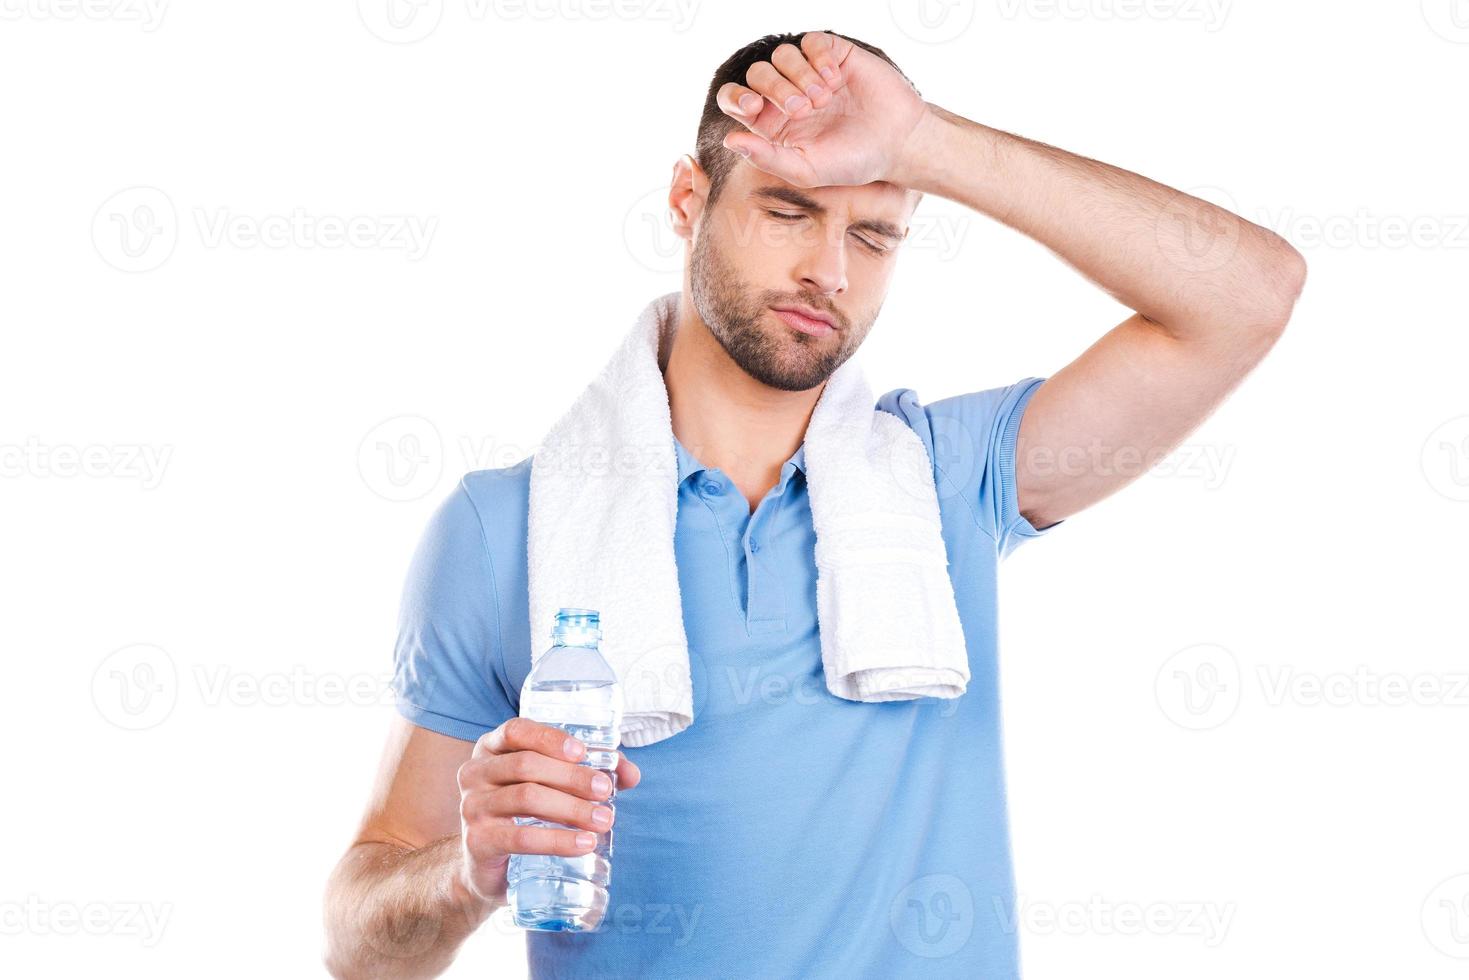 sentindo tão cansado. jovem cansado com toalha nos ombros, segurando a garrafa com água e sorrindo em pé contra um fundo branco foto